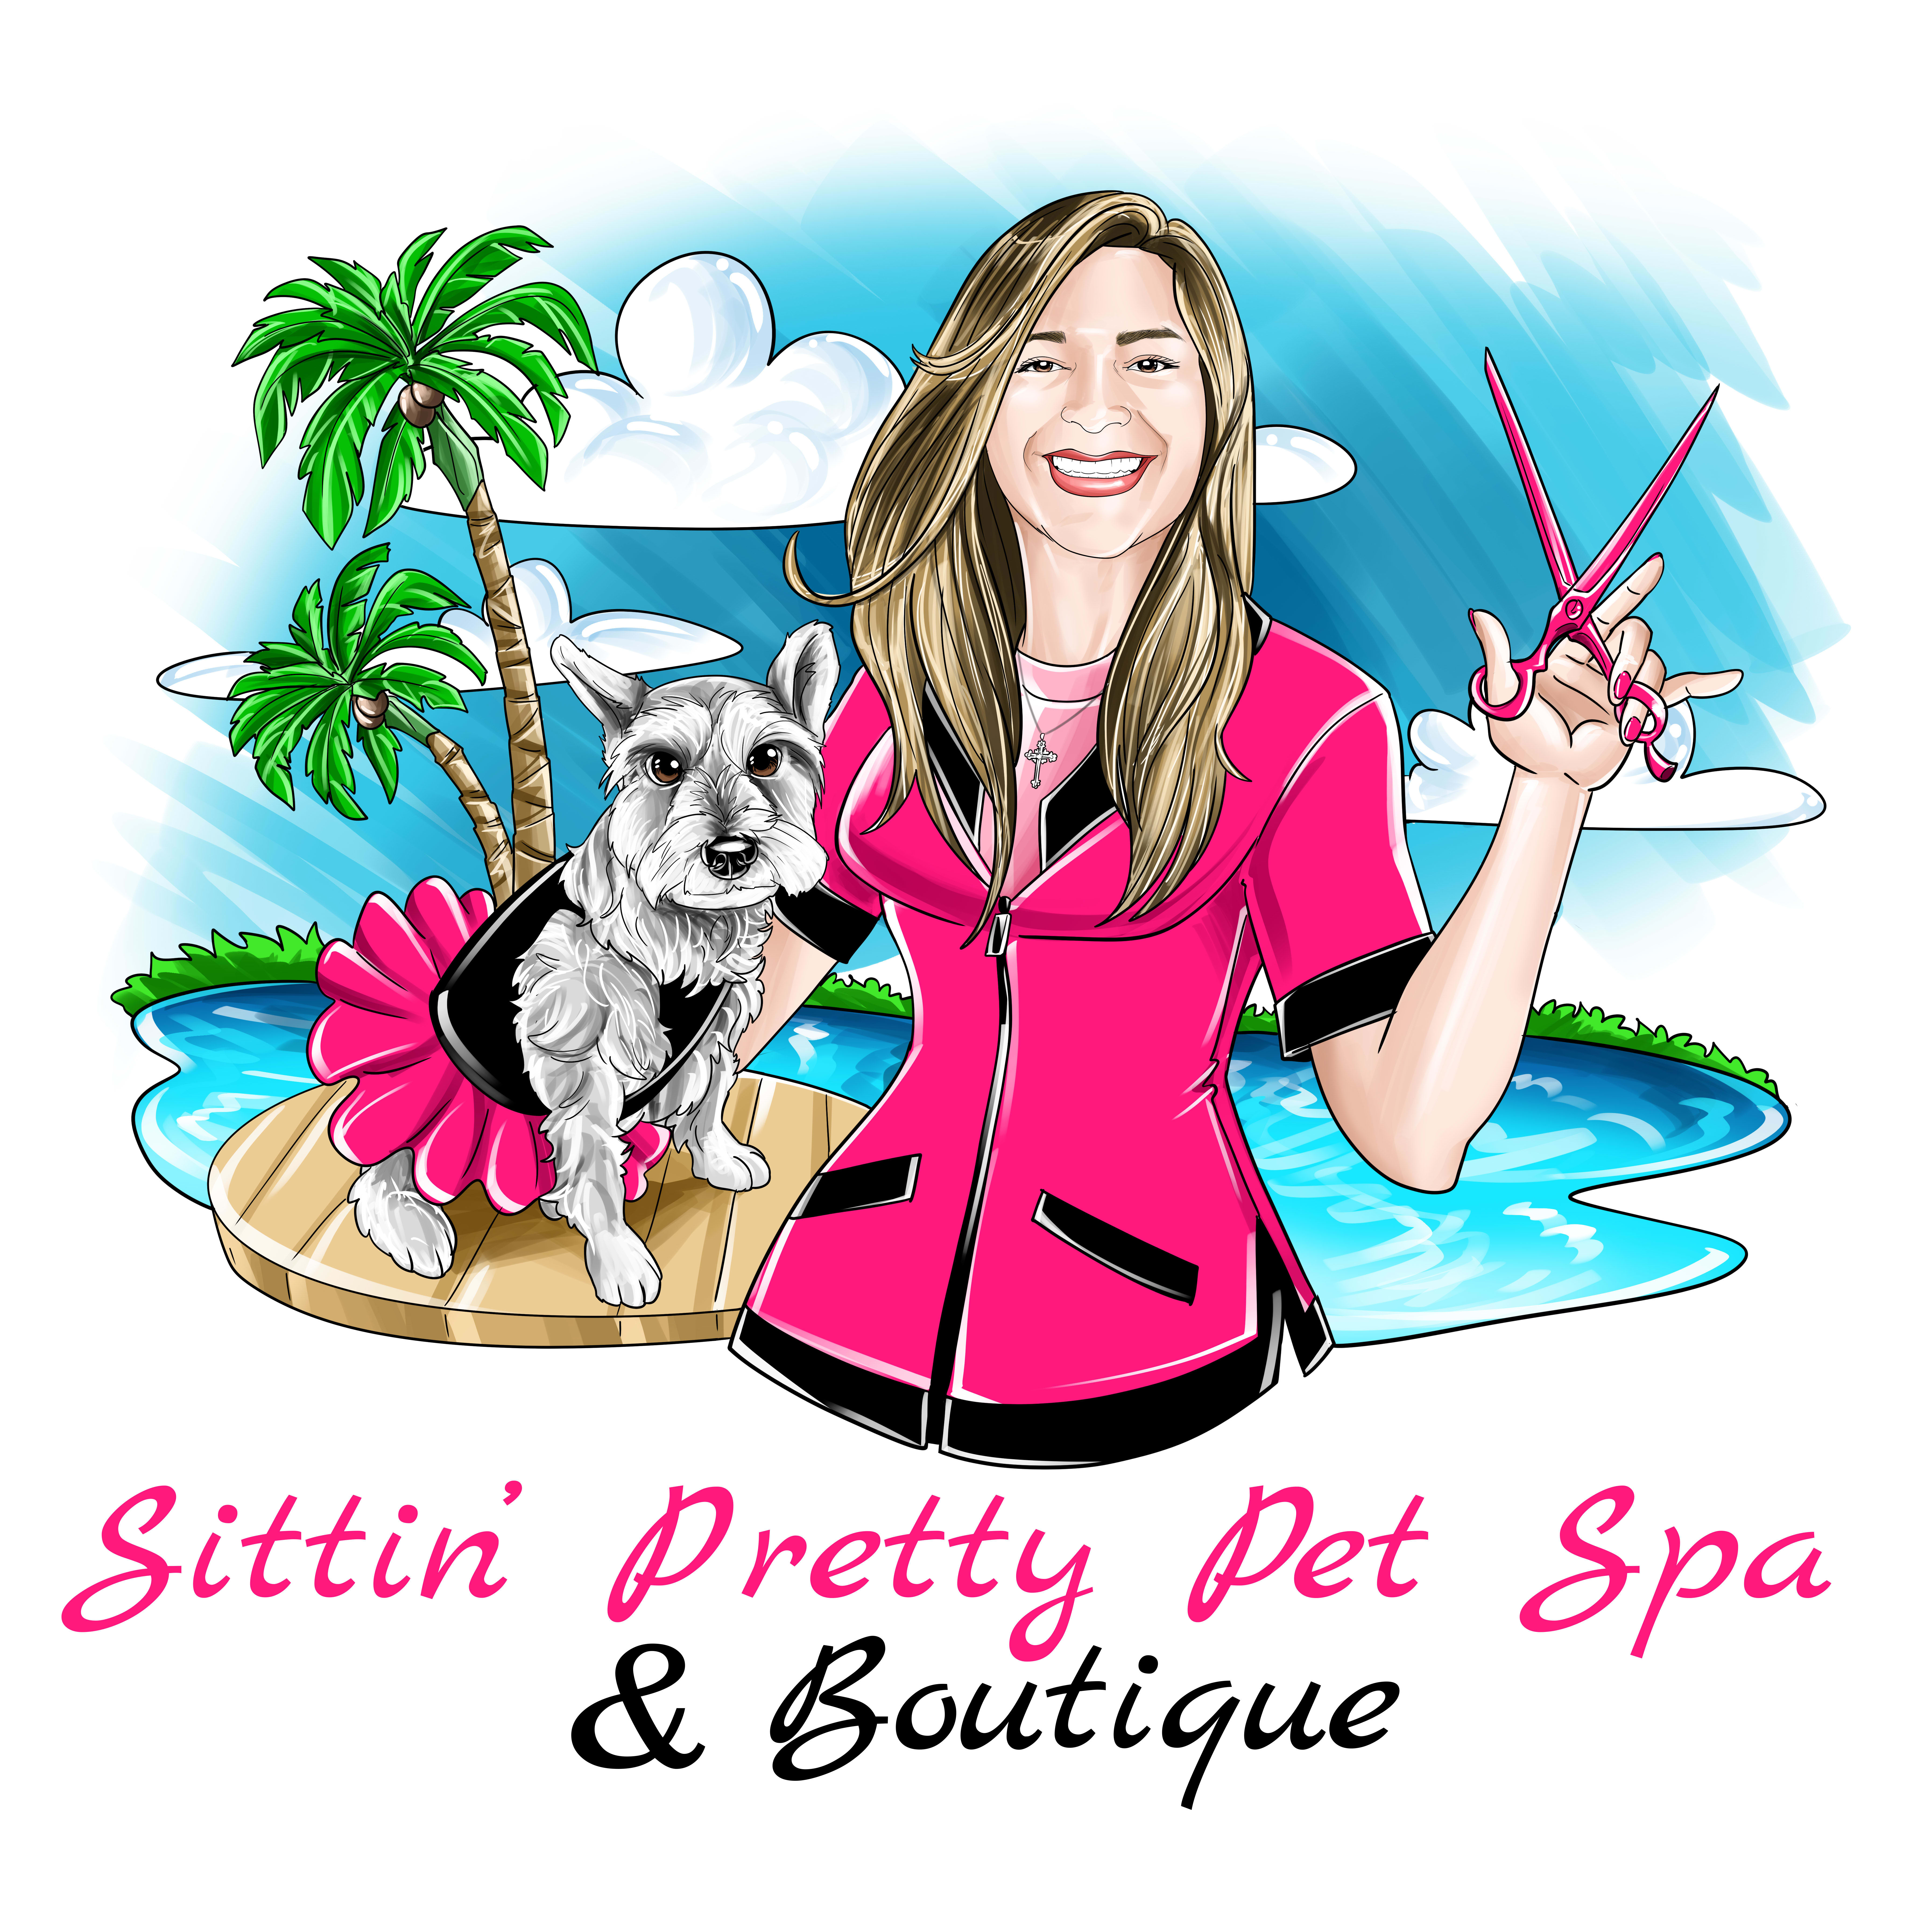 Sittin’ Pretty Pet Spa & Boutique